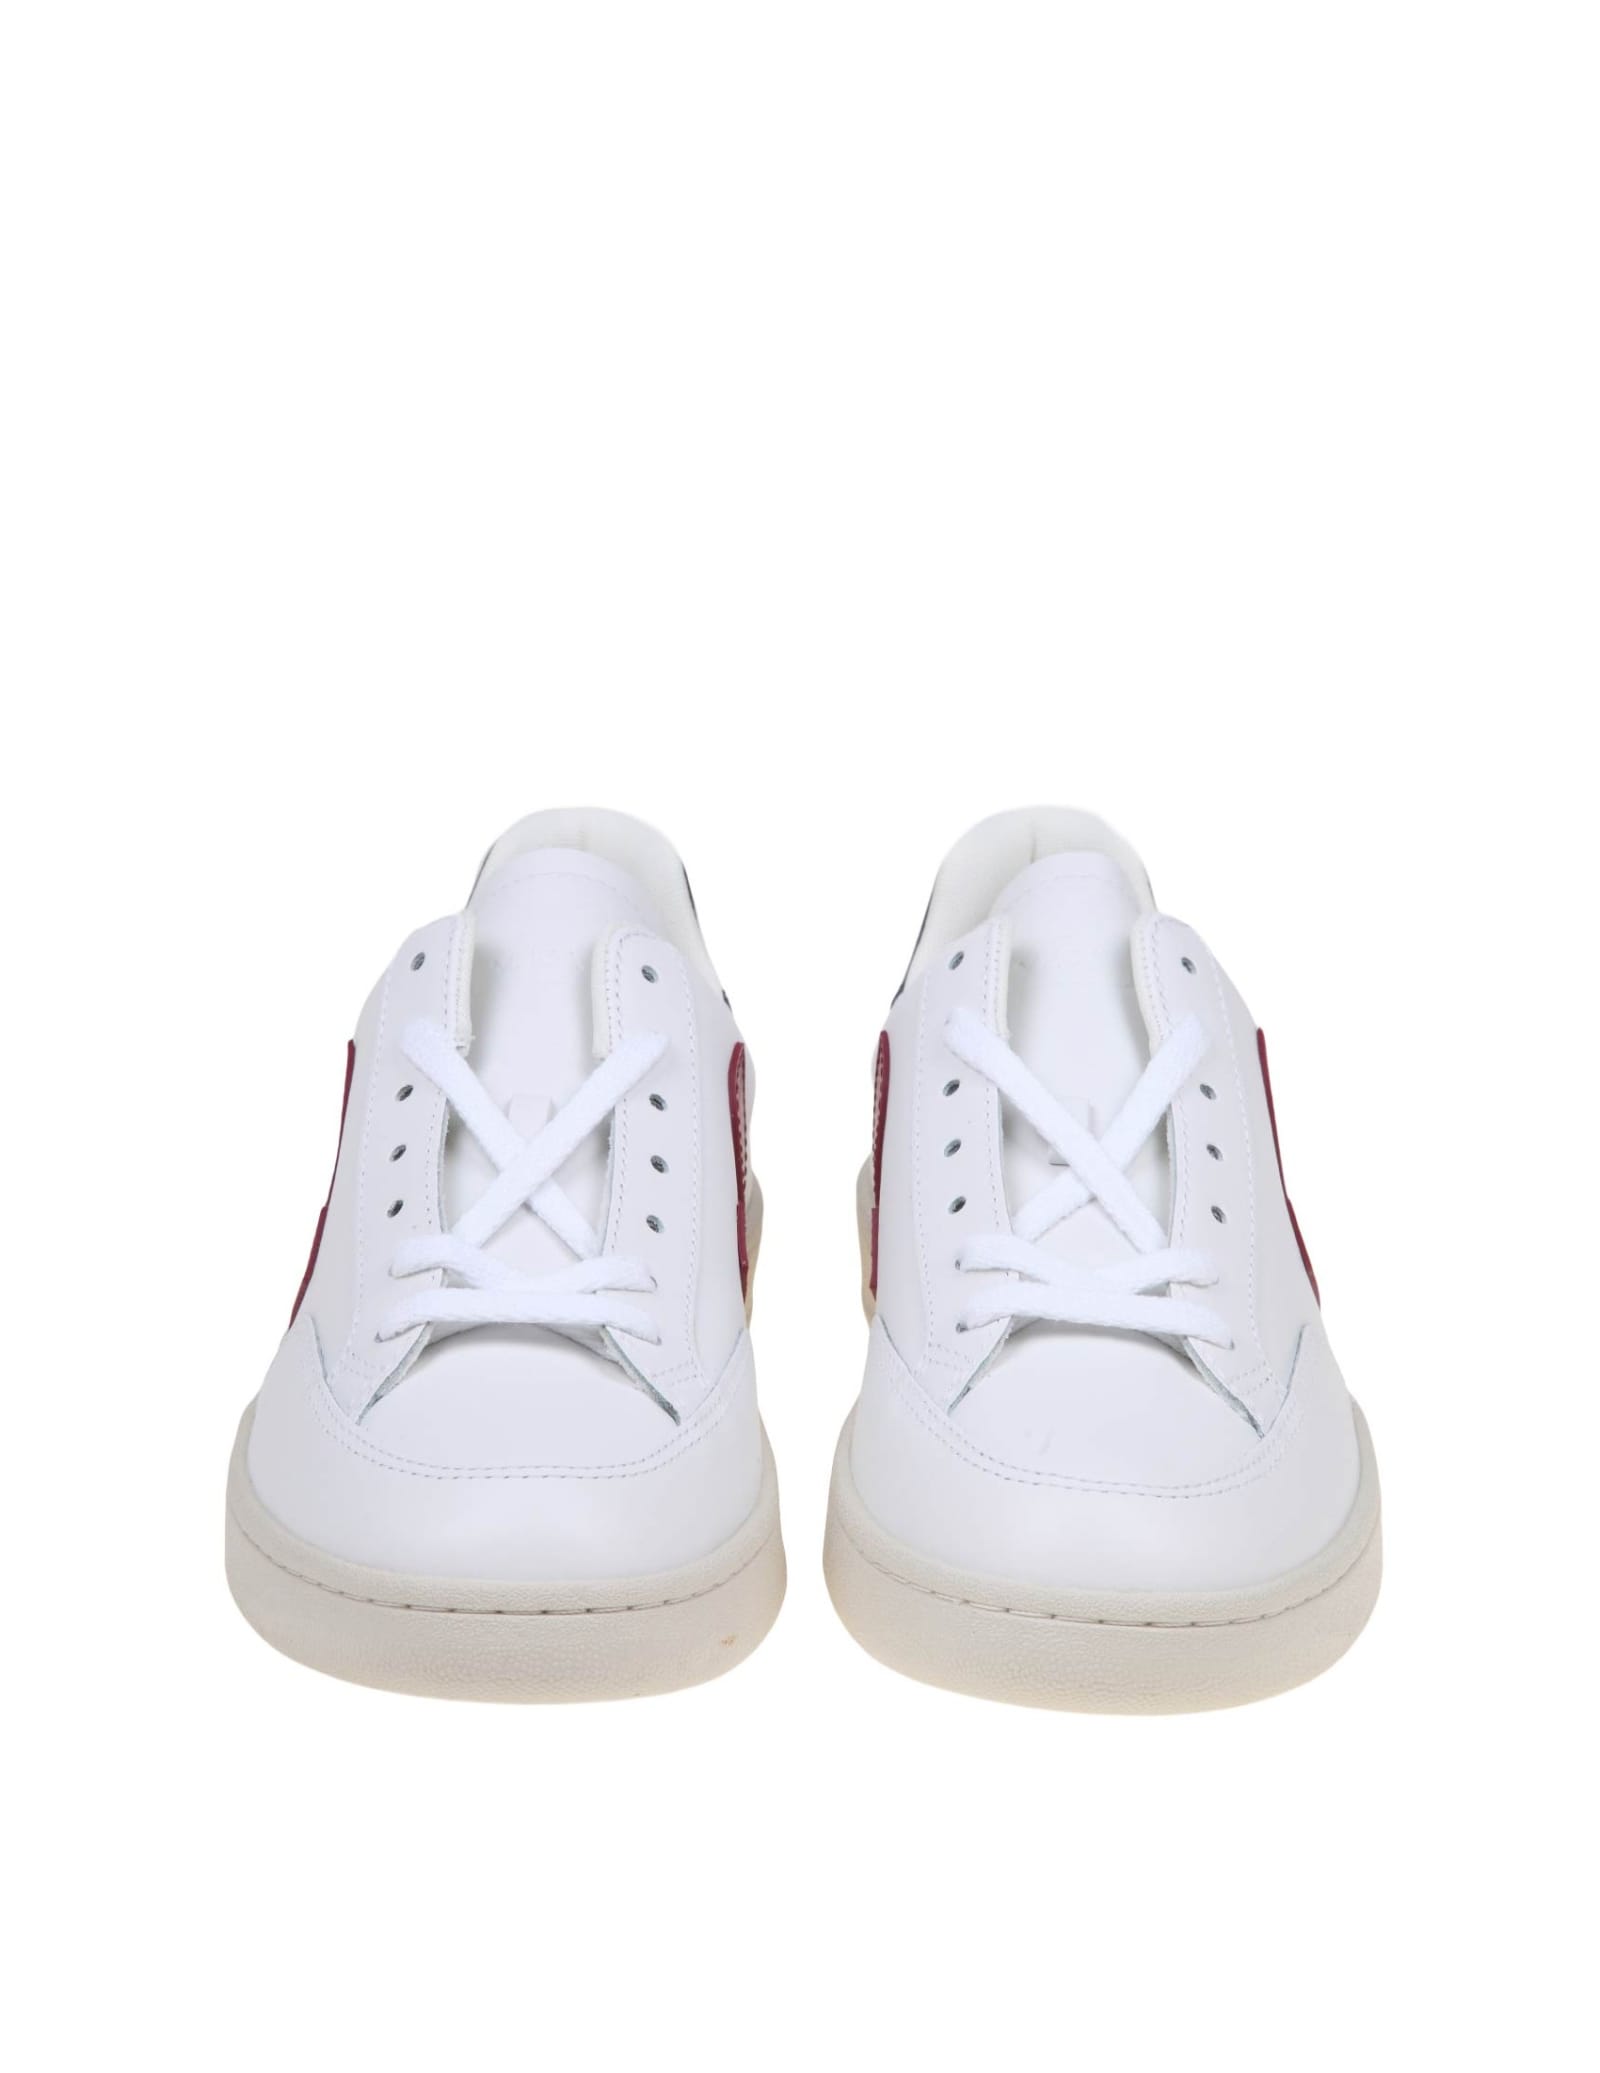 Shop Veja V 12 Sneakers In White/marsala Leather